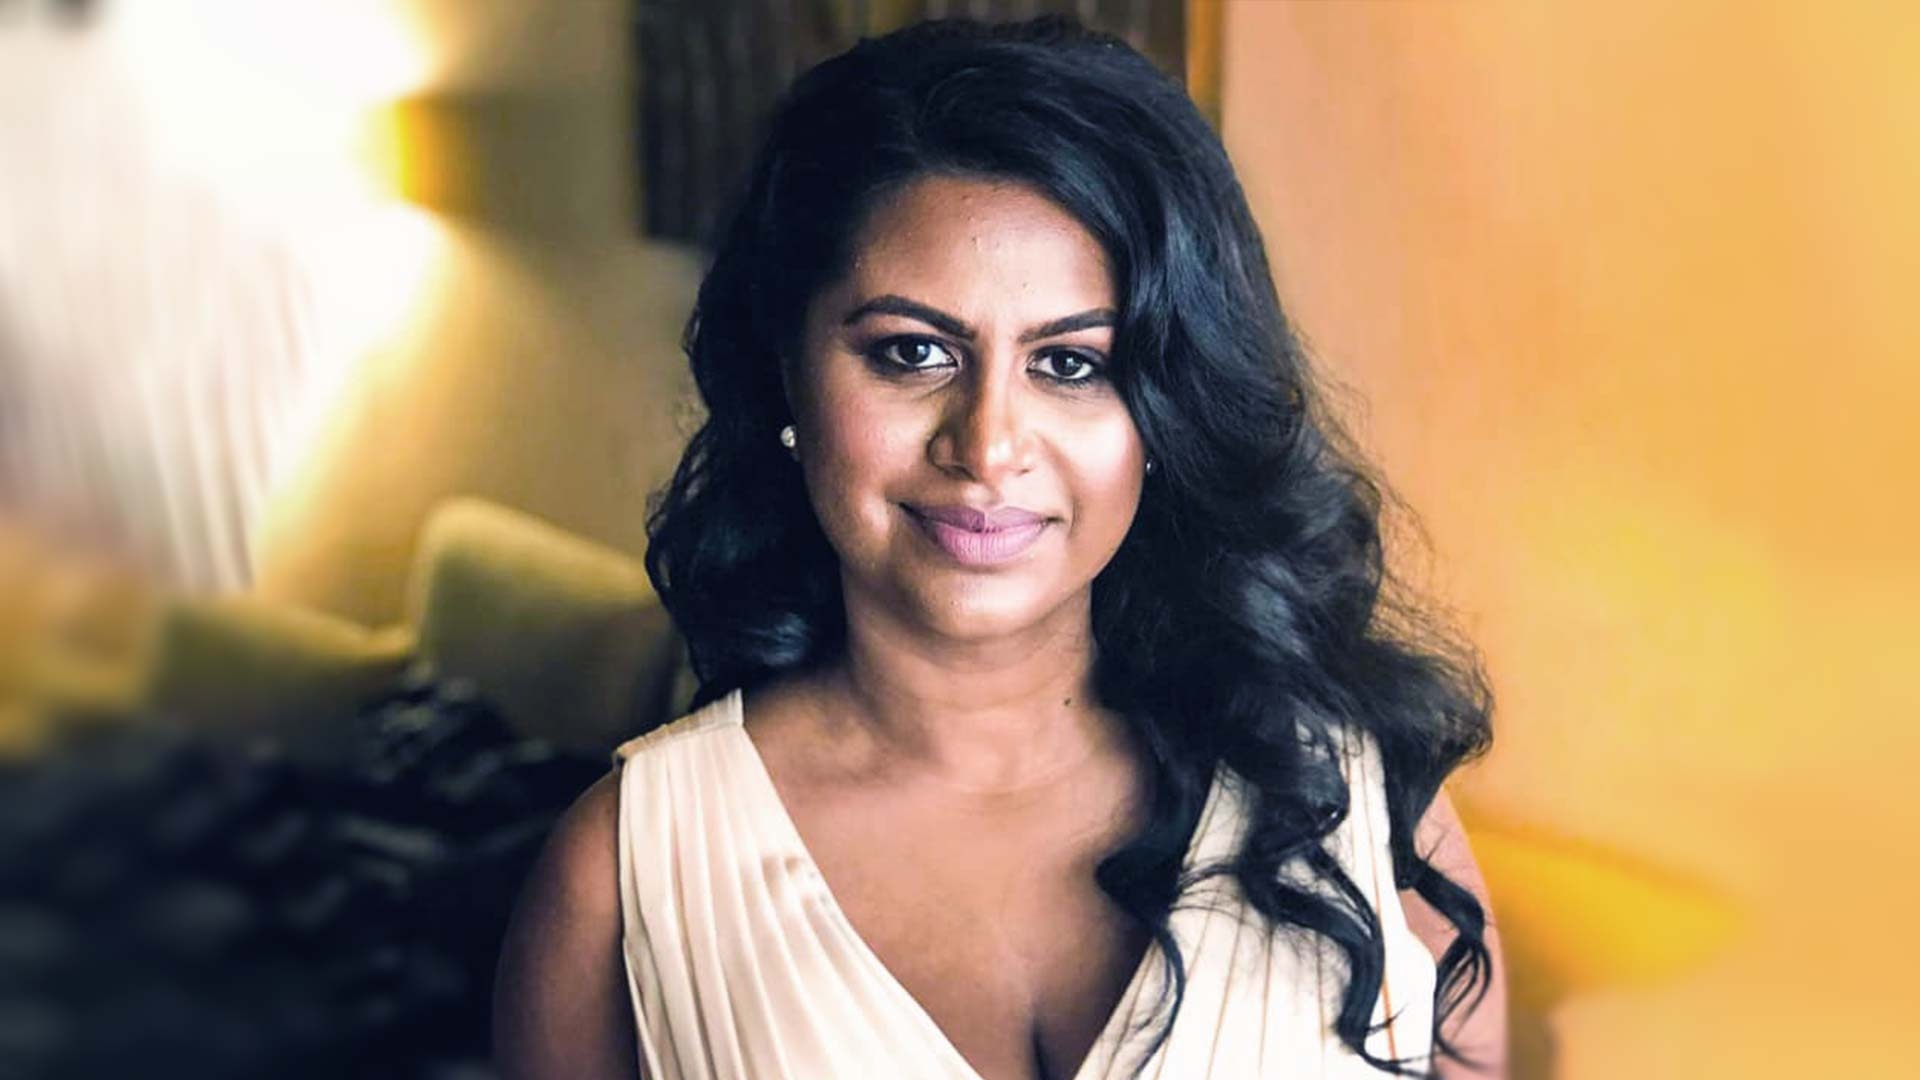 Shaini Saravanamuthu